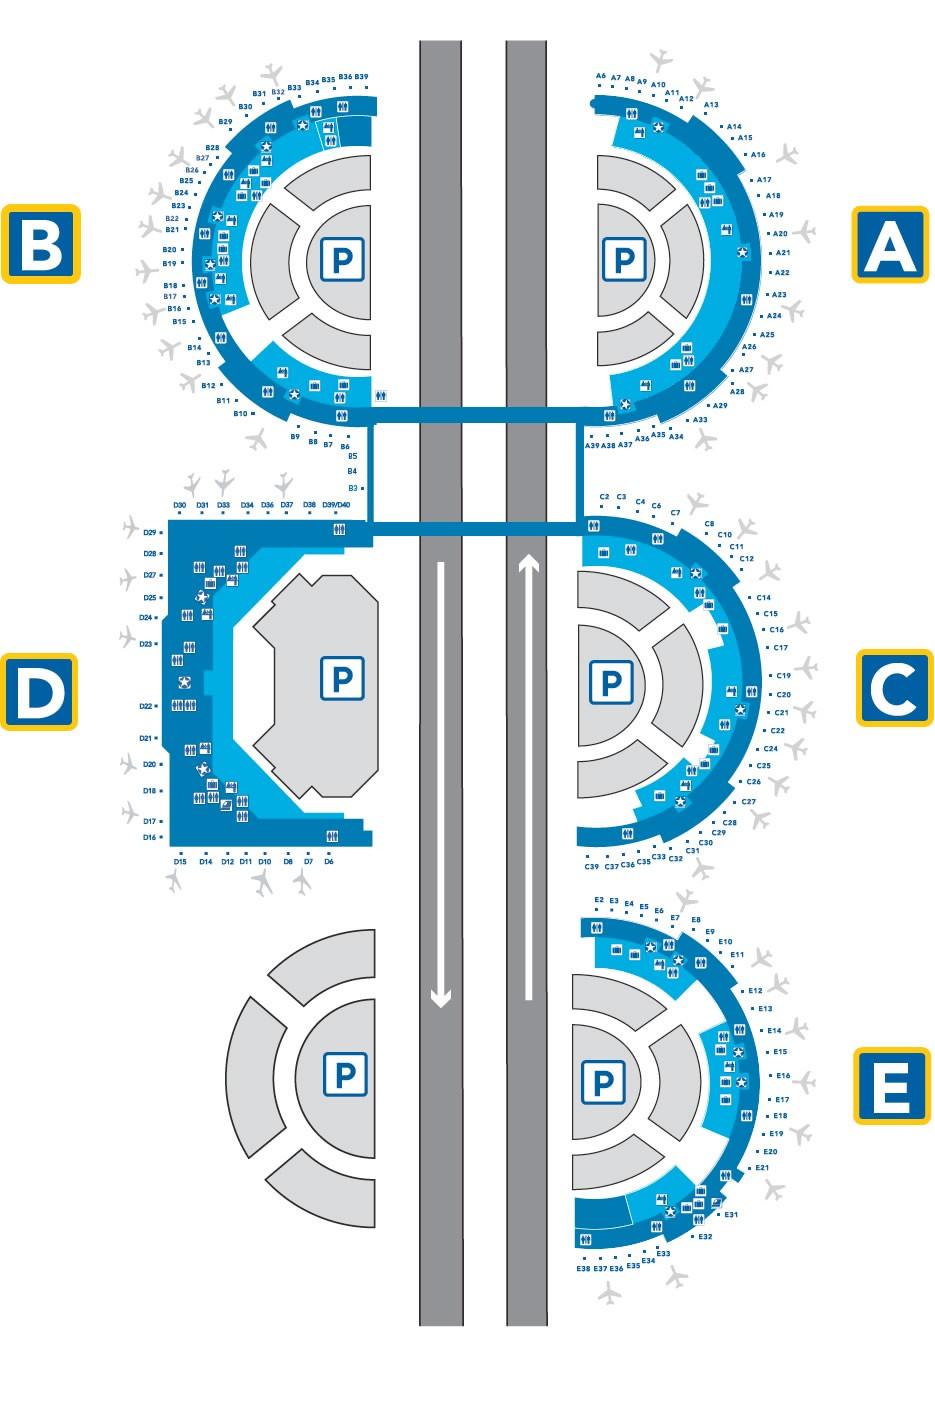 Το πρόβλημα: Παράδειγμα 1 Dallas / Fort Worth Gate Arrival Plan üτο Σχέδιο Οι επιβάτες παρκάρουν ακριβώς μπροστά στο gate και